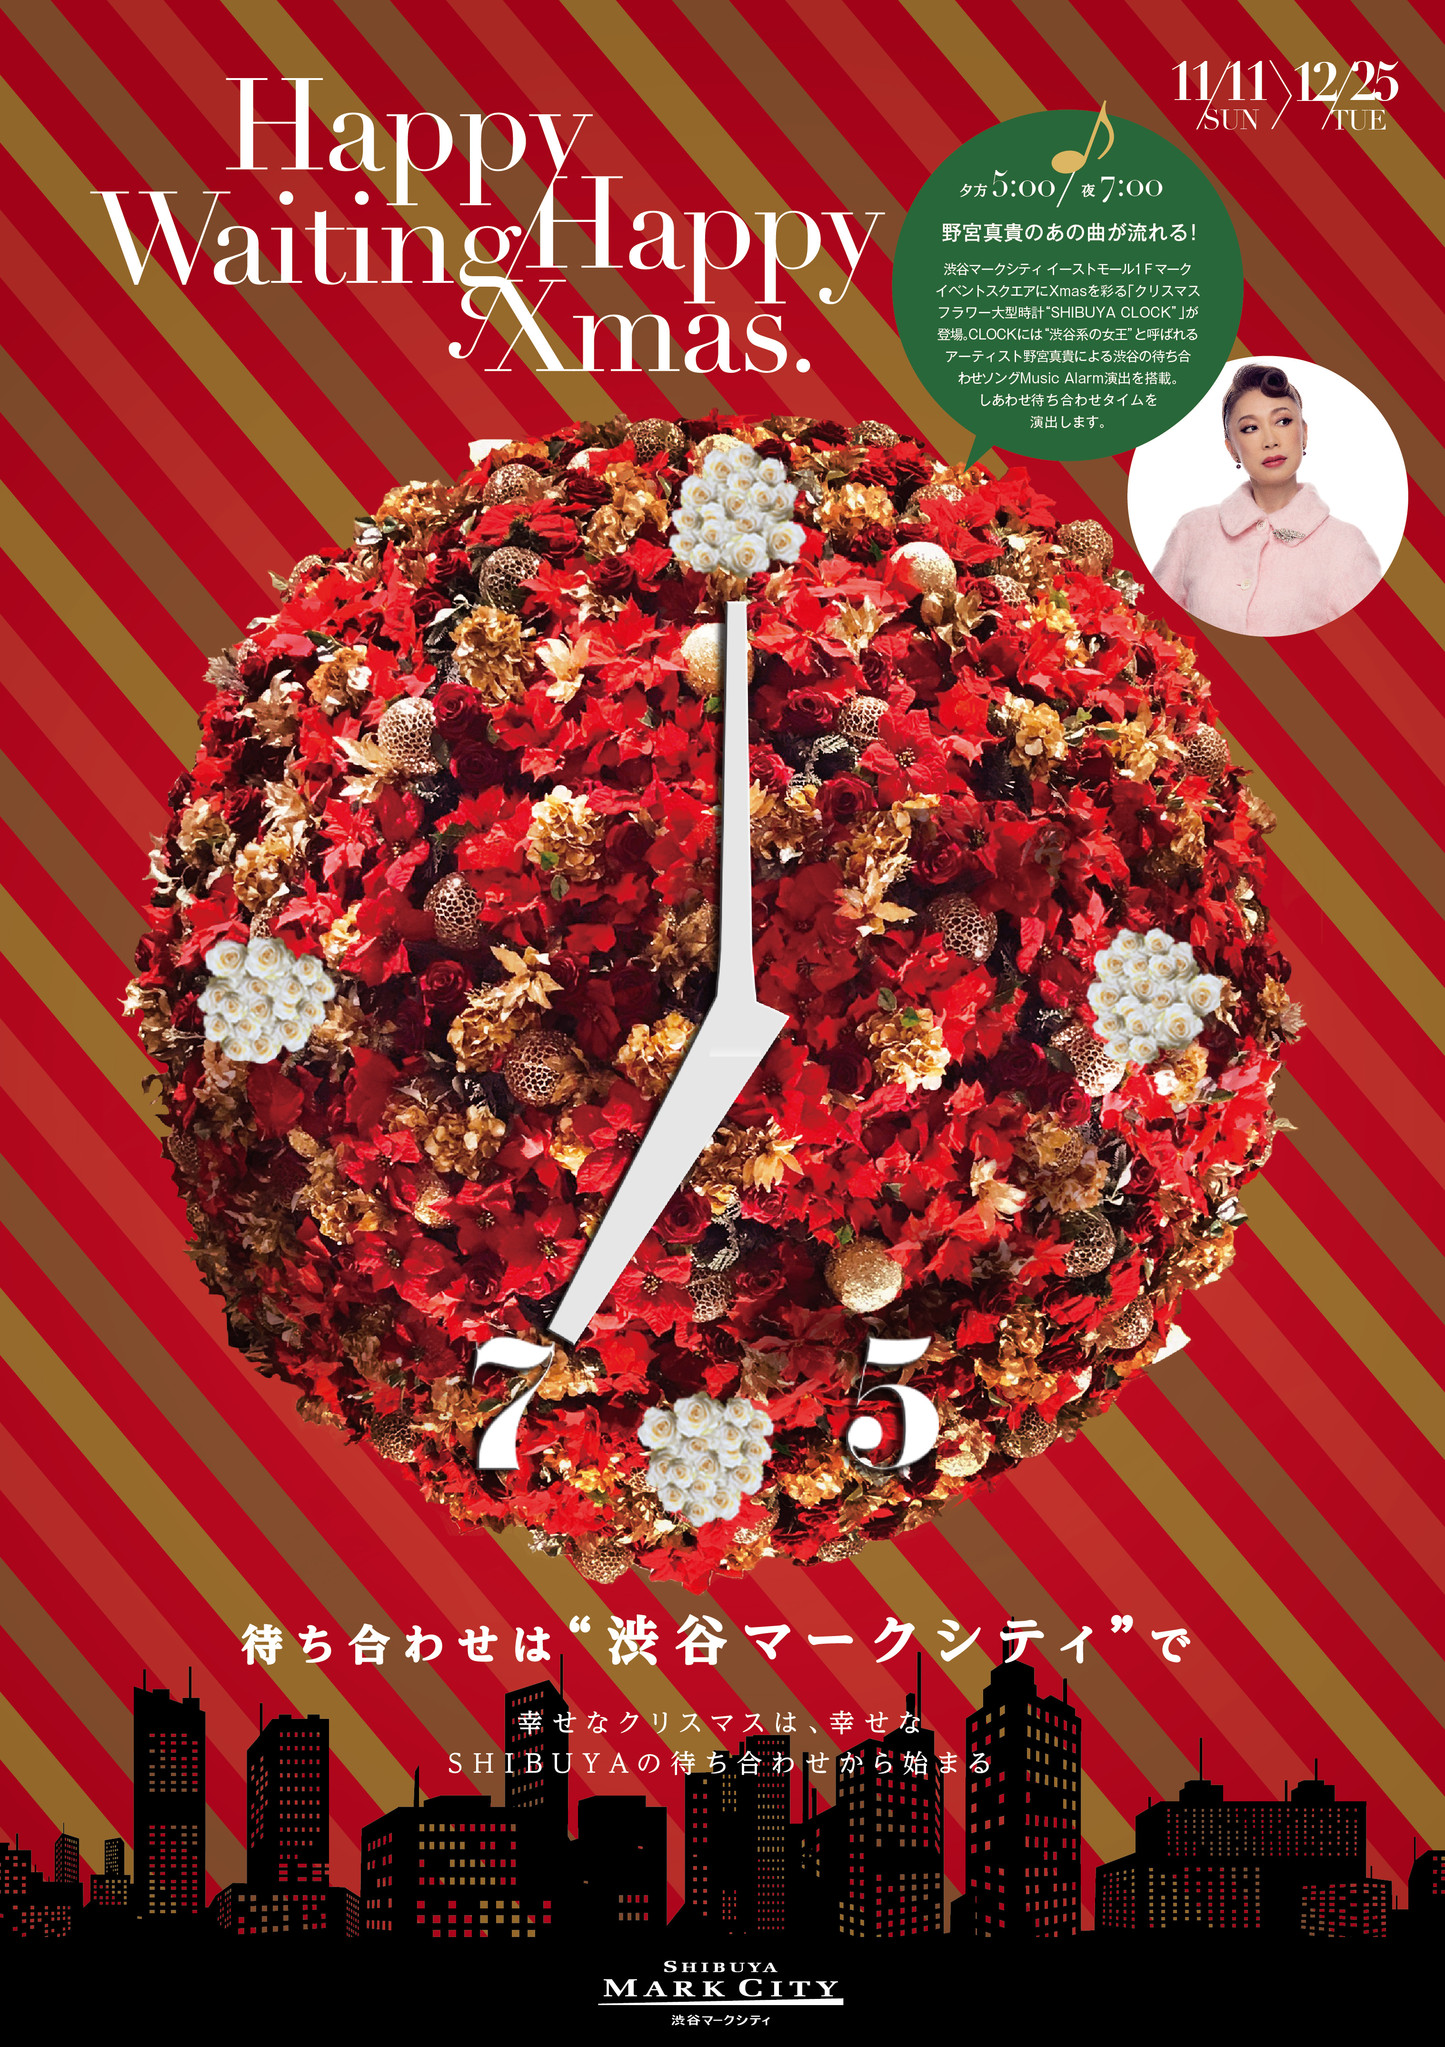 渋谷マークシティ18クリスマスキャンペーン Happy Waiting Happy Xmas がスタート 株式会社渋谷マークシティ のプレスリリース